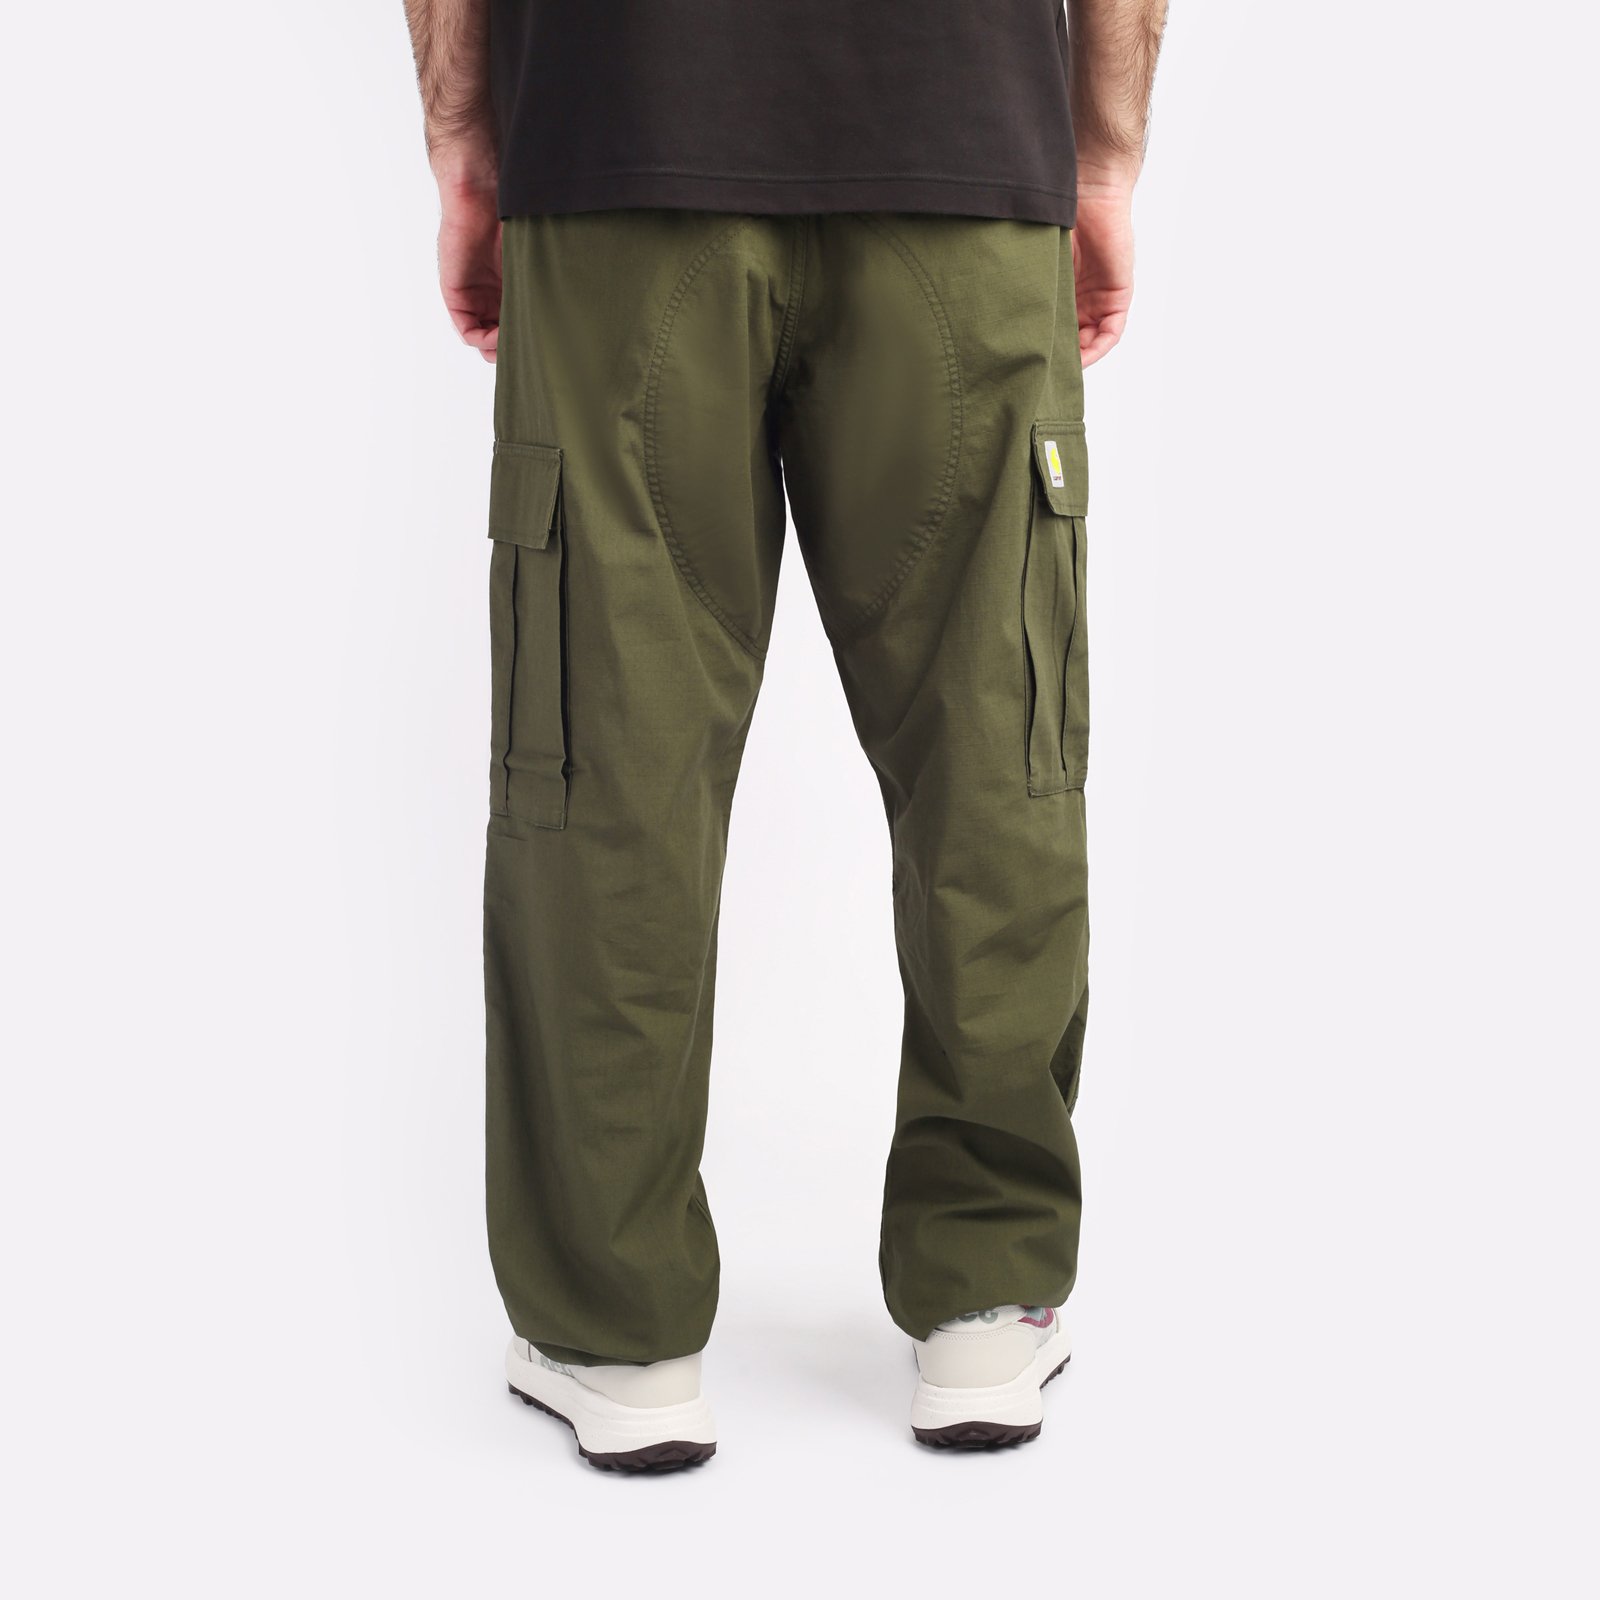 мужские зеленые брюки Carhartt WIP Regular Cargo Pant I032467-cypress - цена, описание, фото 2